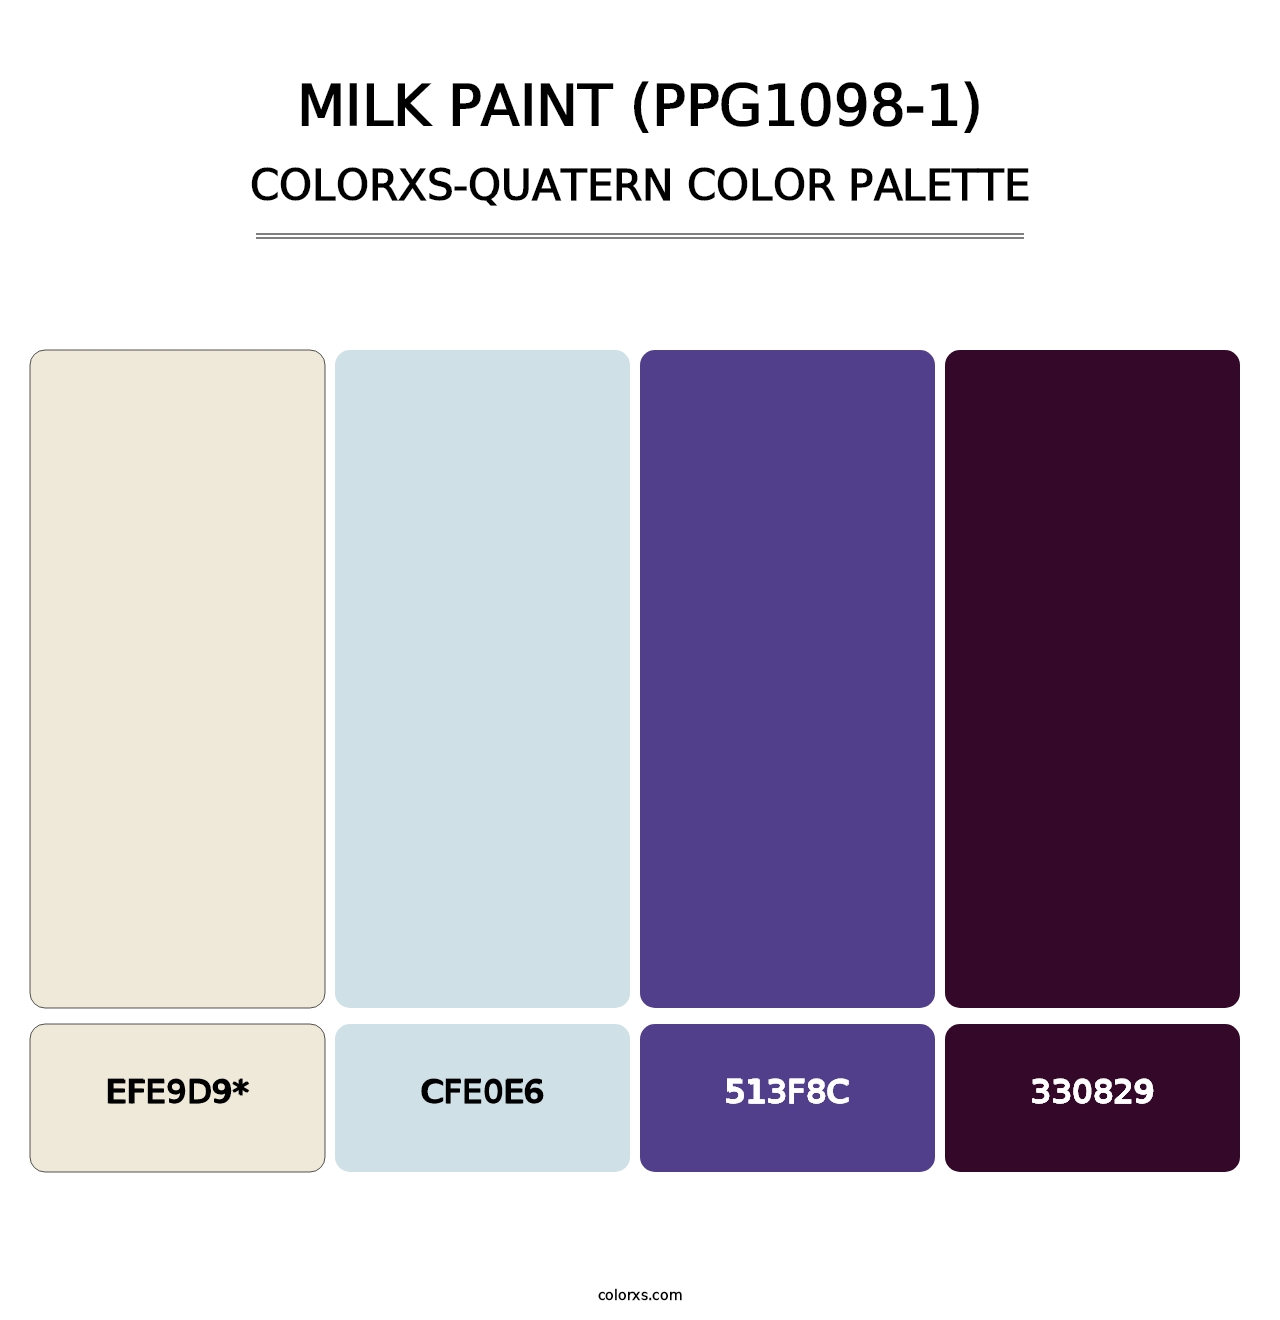 Milk Paint (PPG1098-1) - Colorxs Quatern Palette